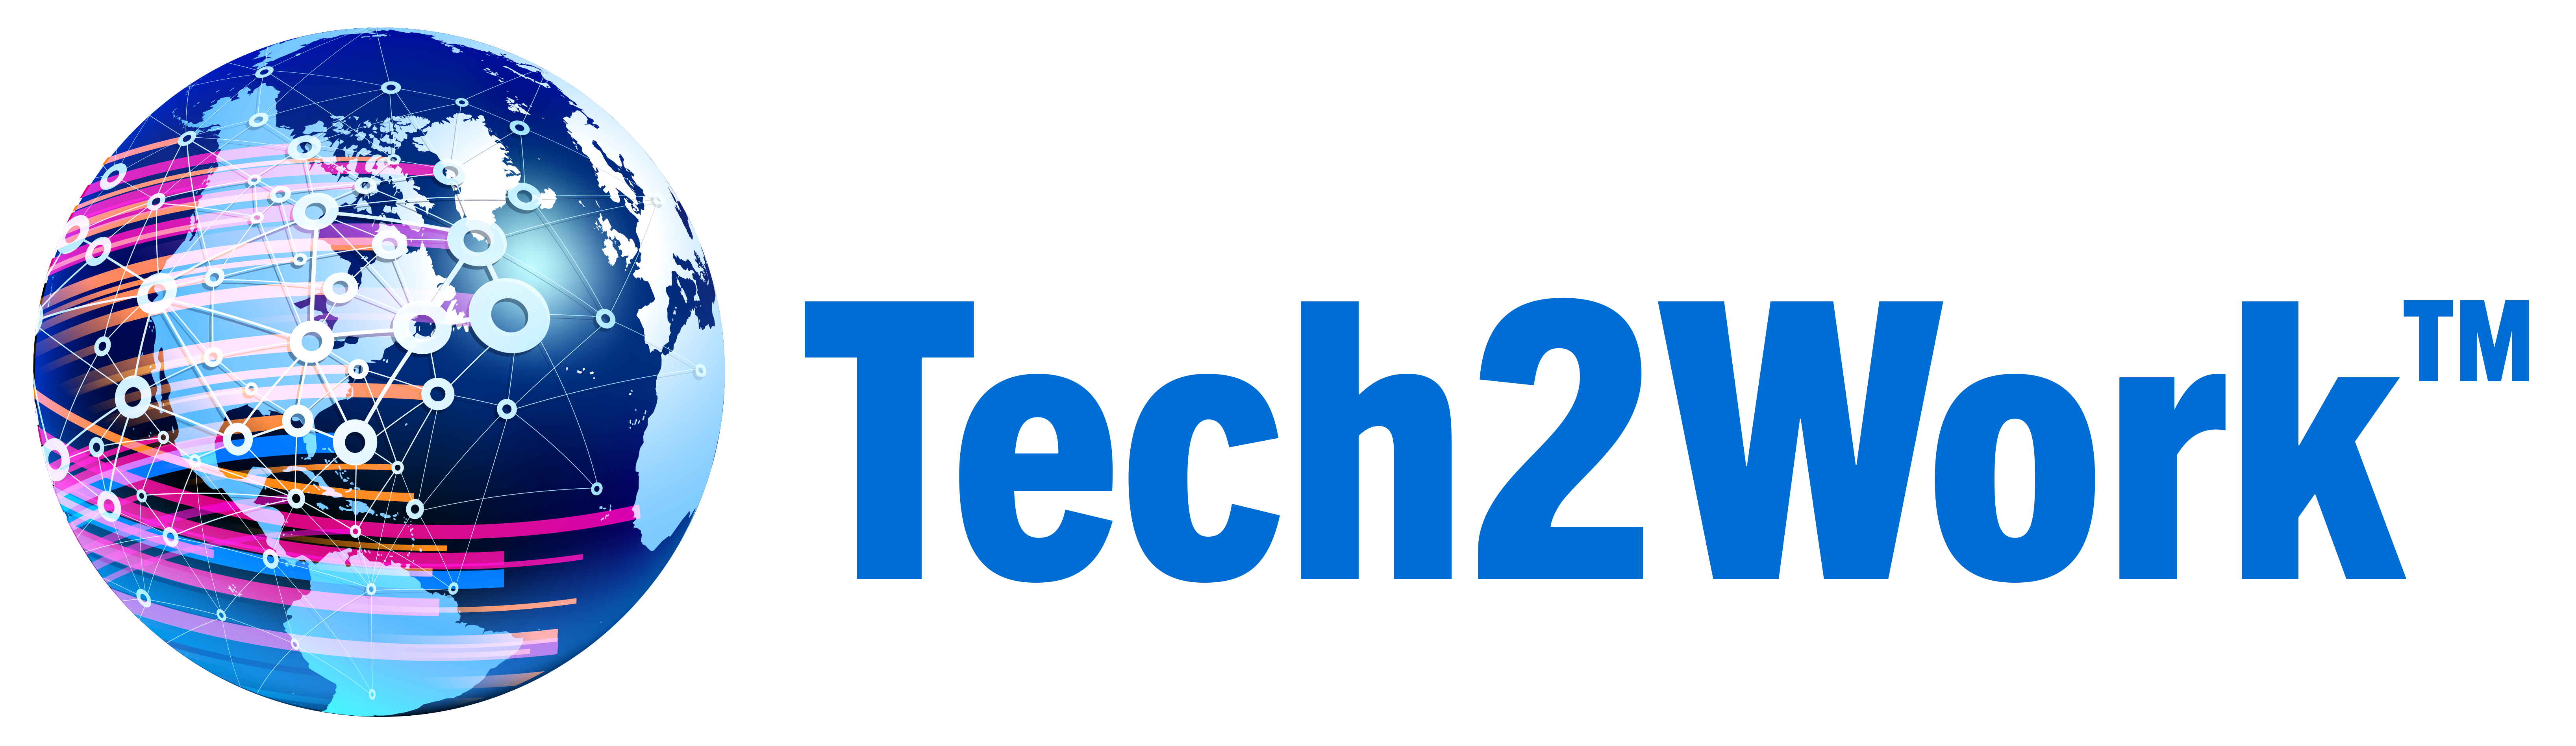 Tech2Work™